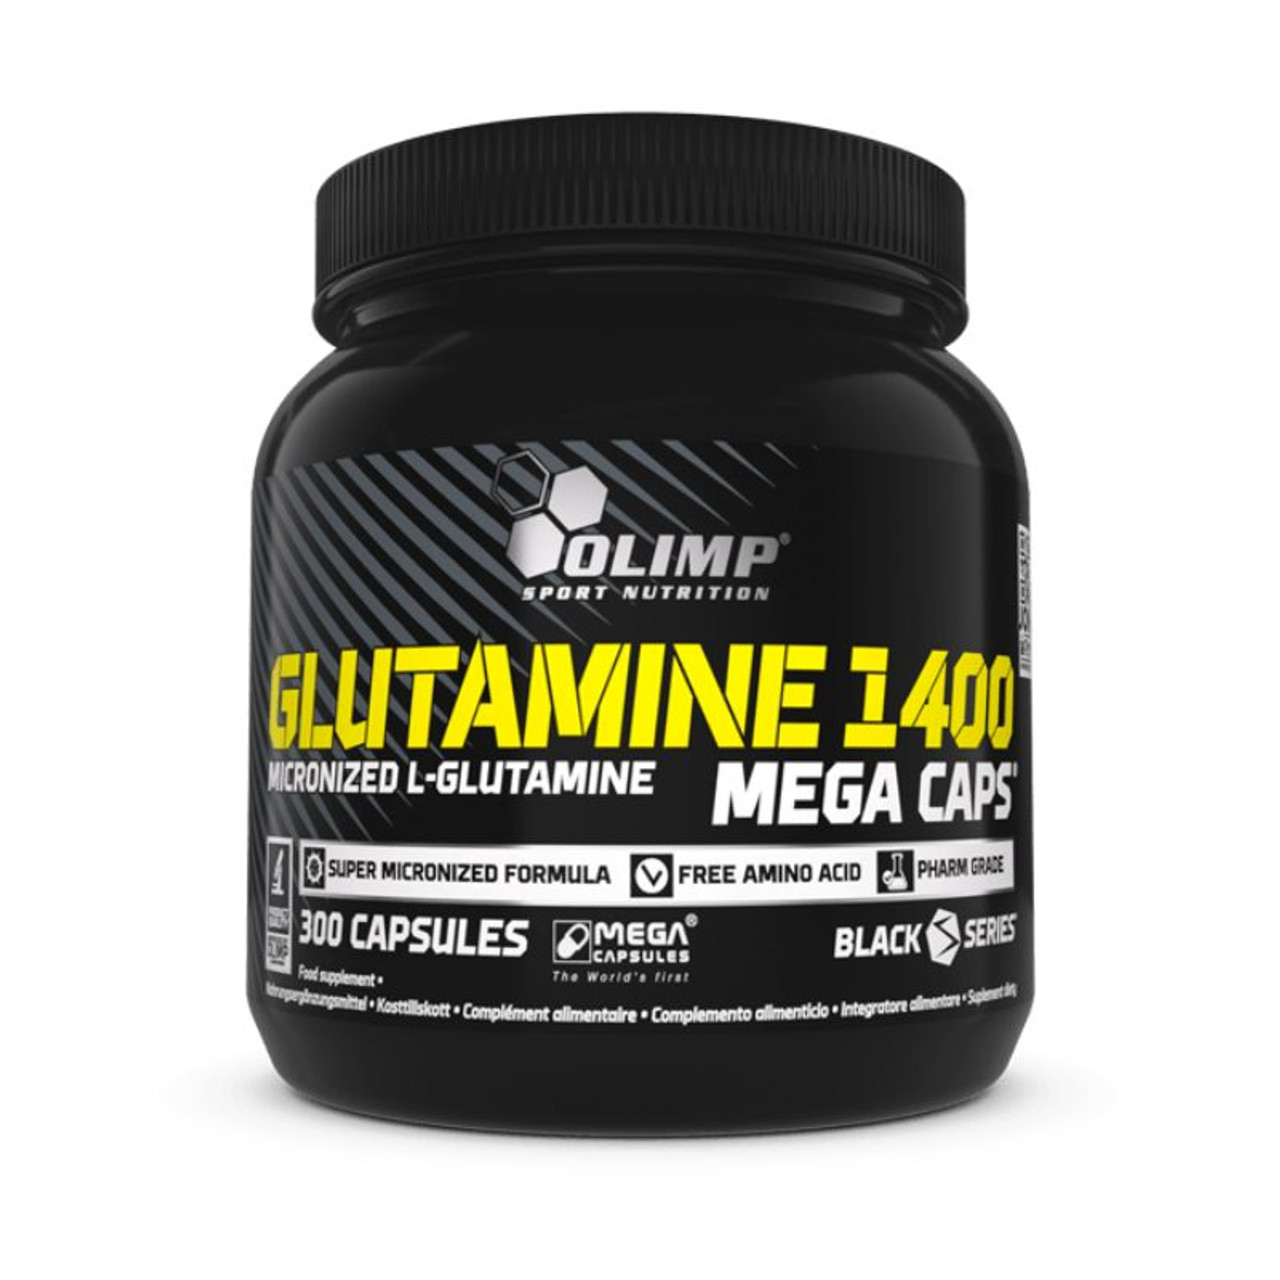 Olimp - Glutamine 1400 Mega Caps - 300 caps